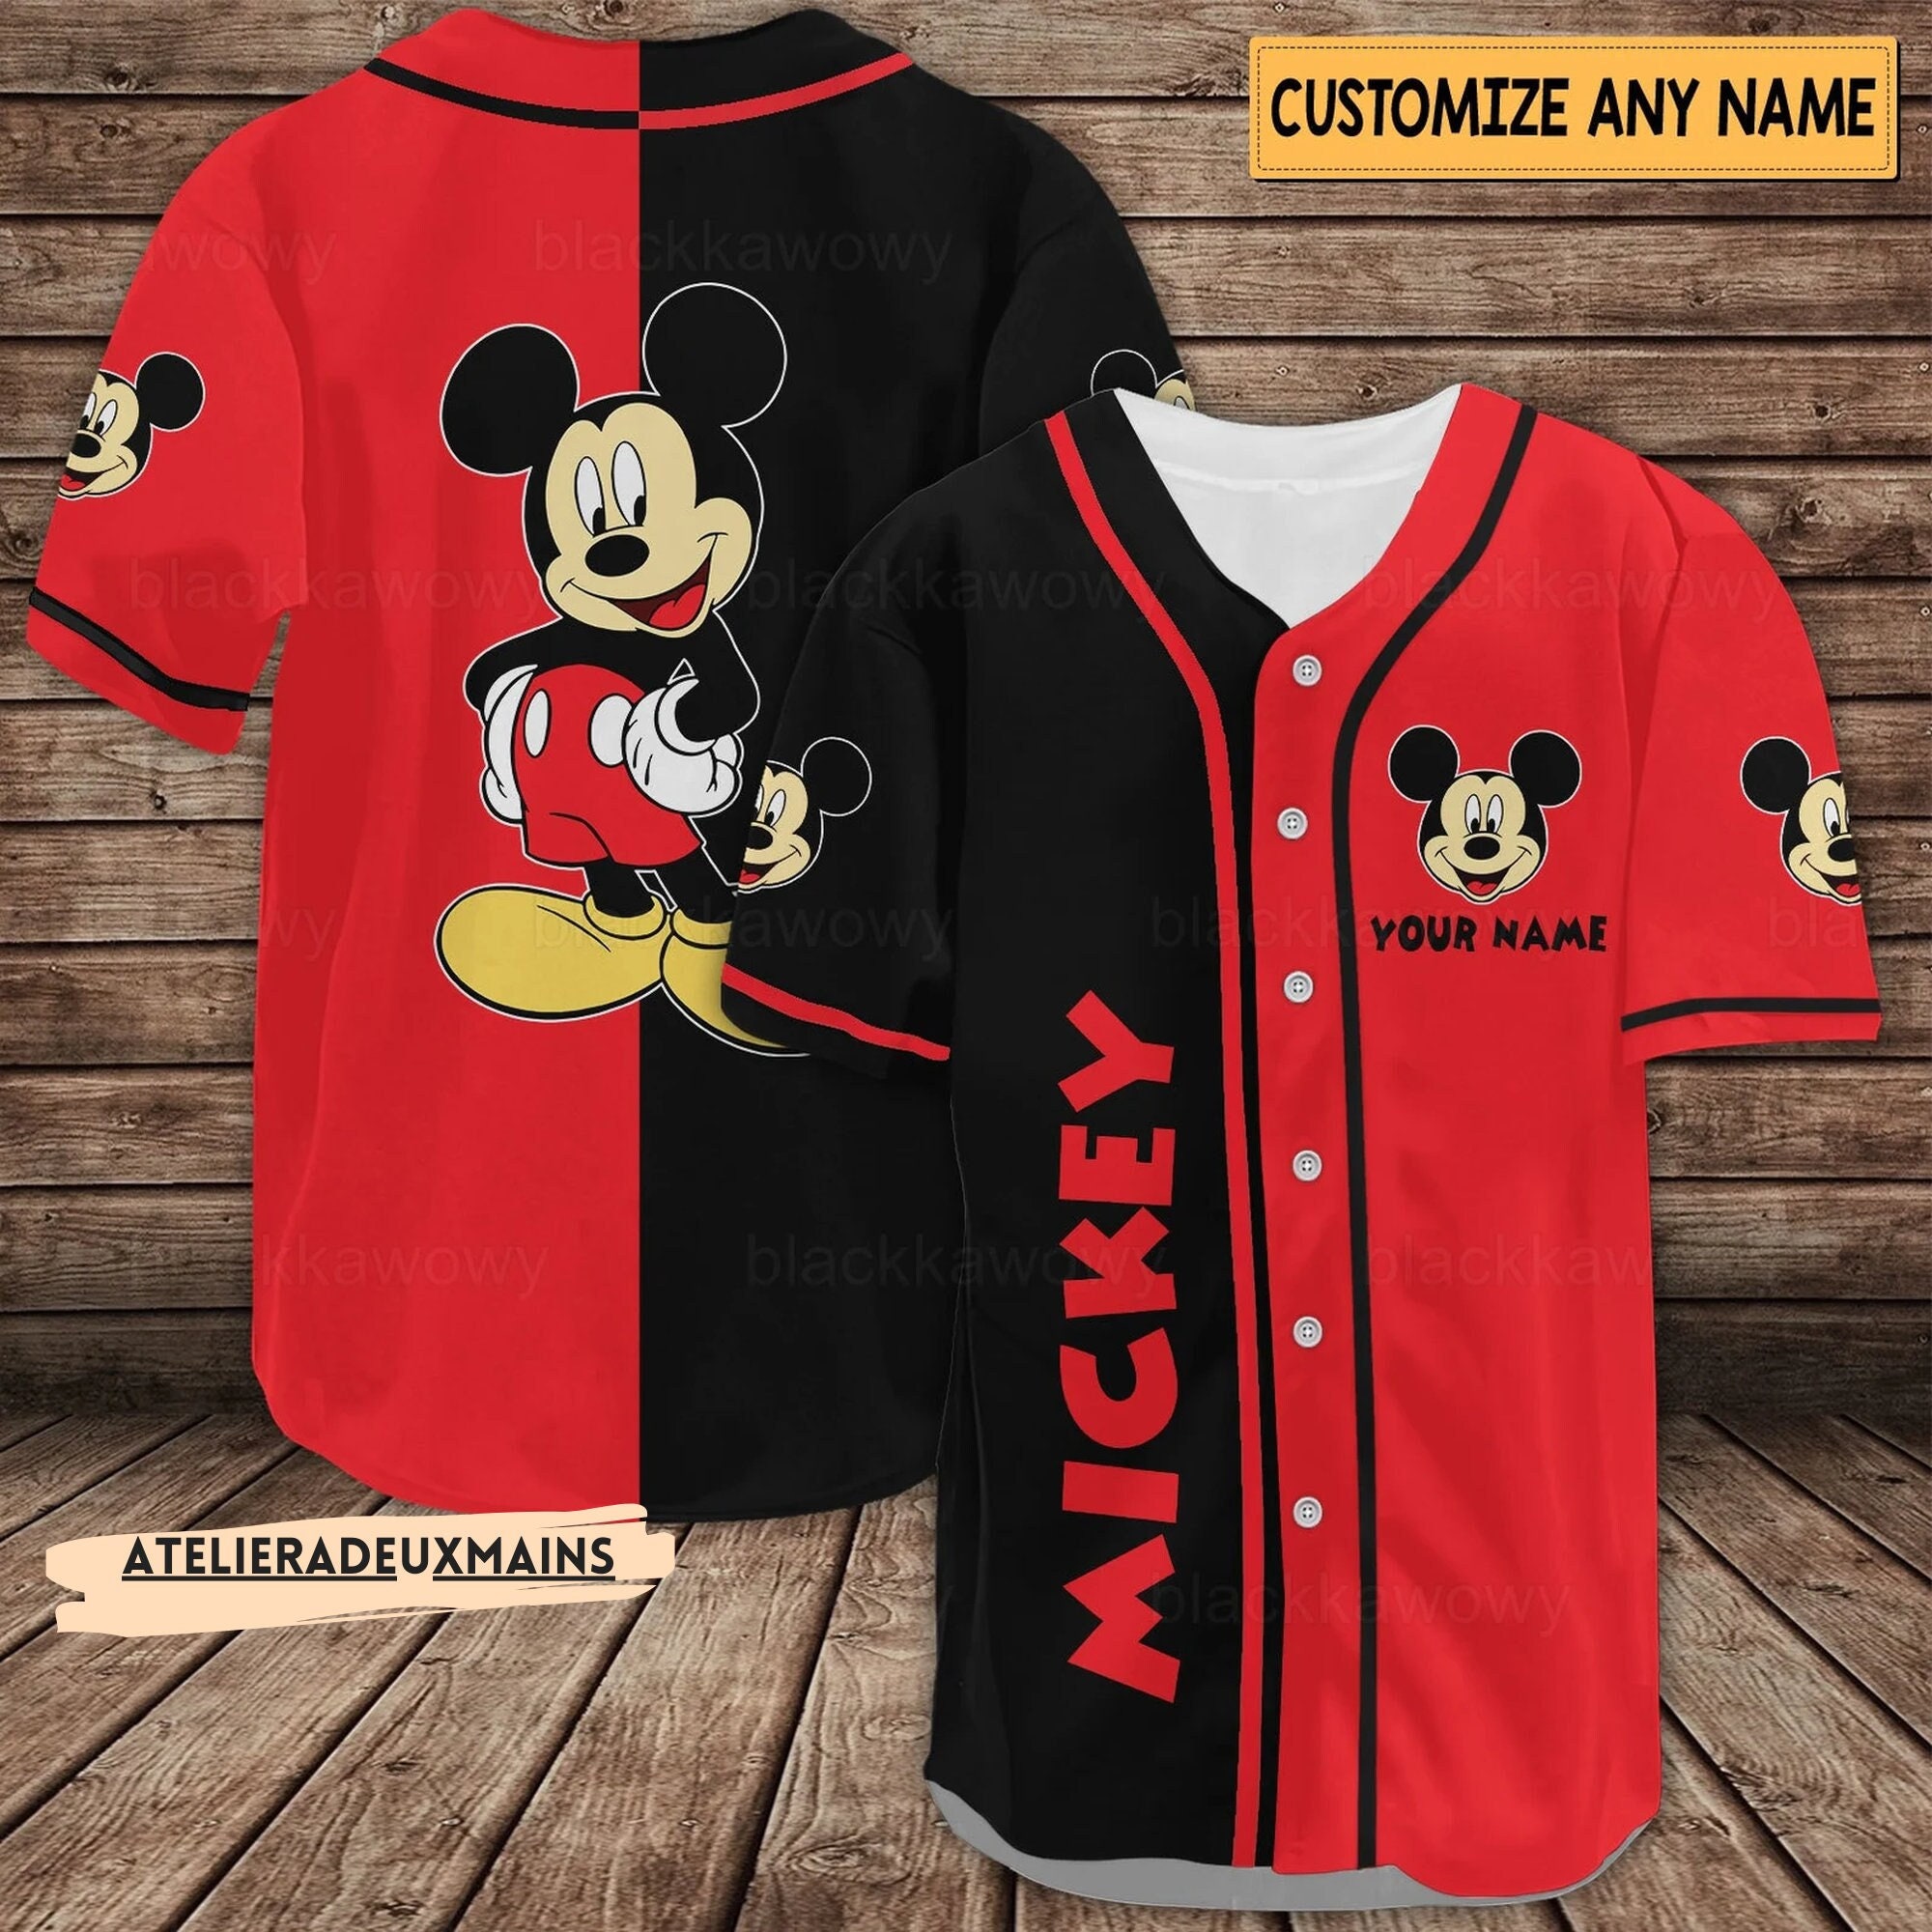 Mickey Mouse Cartoon Baseball Jersey,Personalize Baseball Jersey